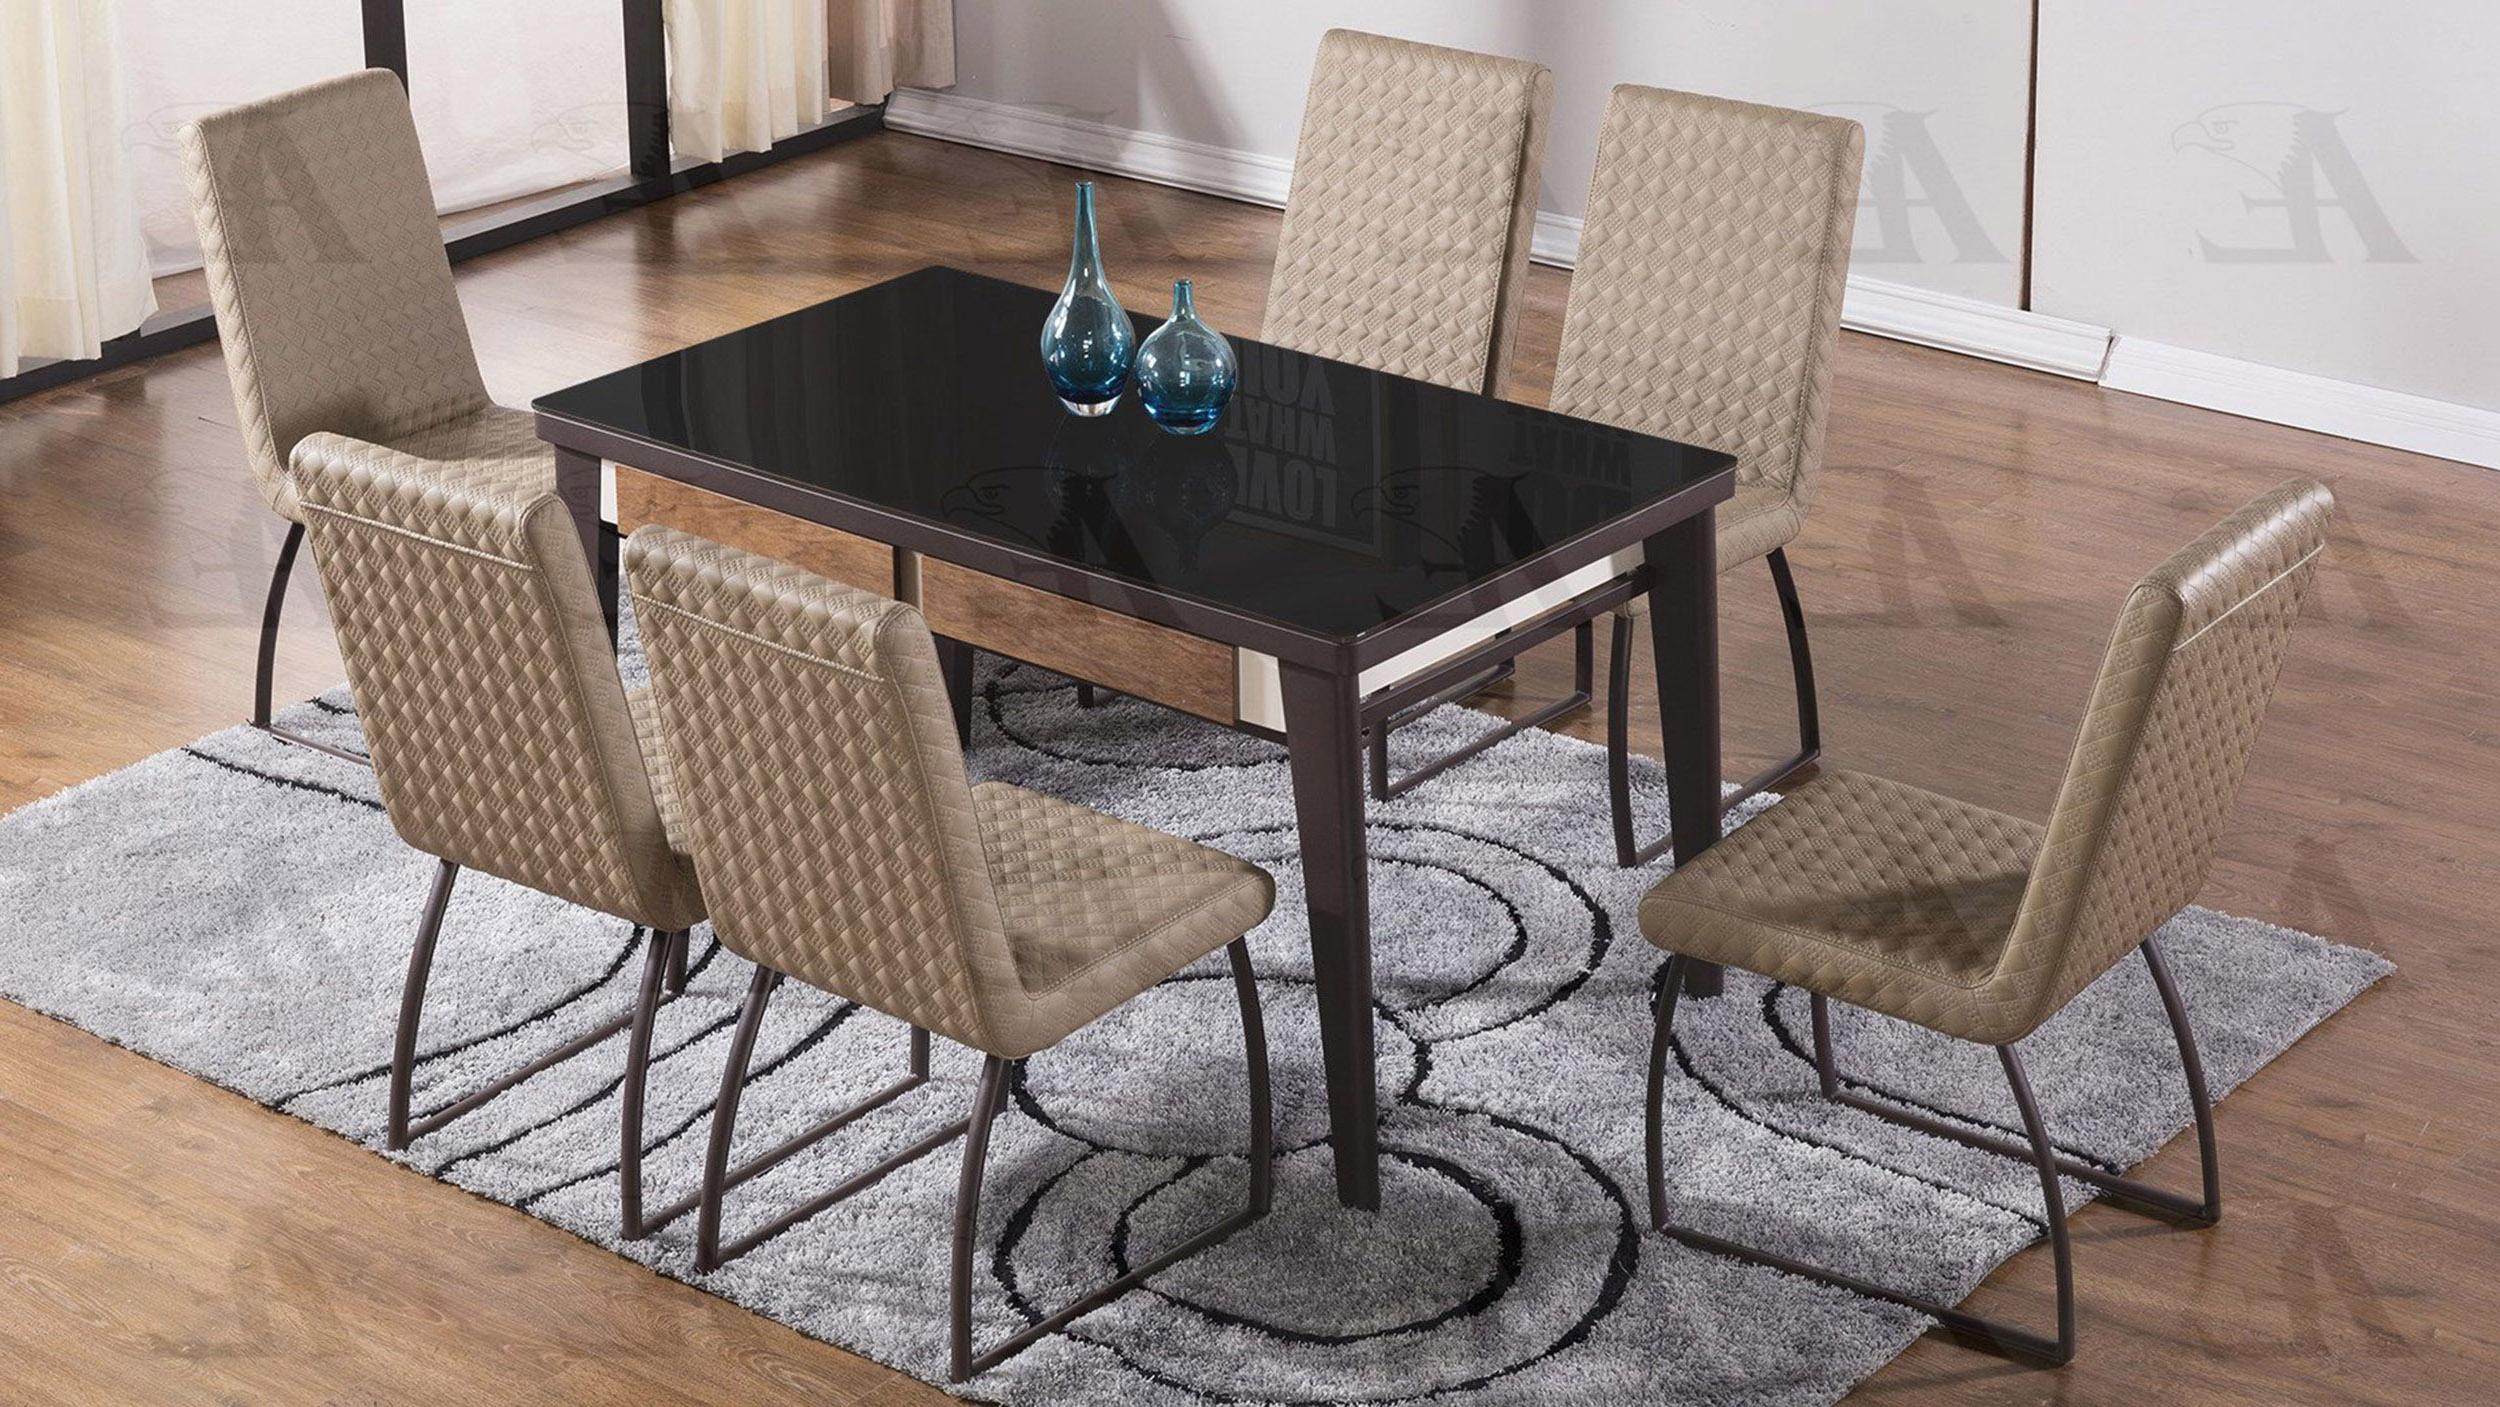 

    
American Eagle Furniture DT-D326 Dining Table Black/Ivory DT-D326
